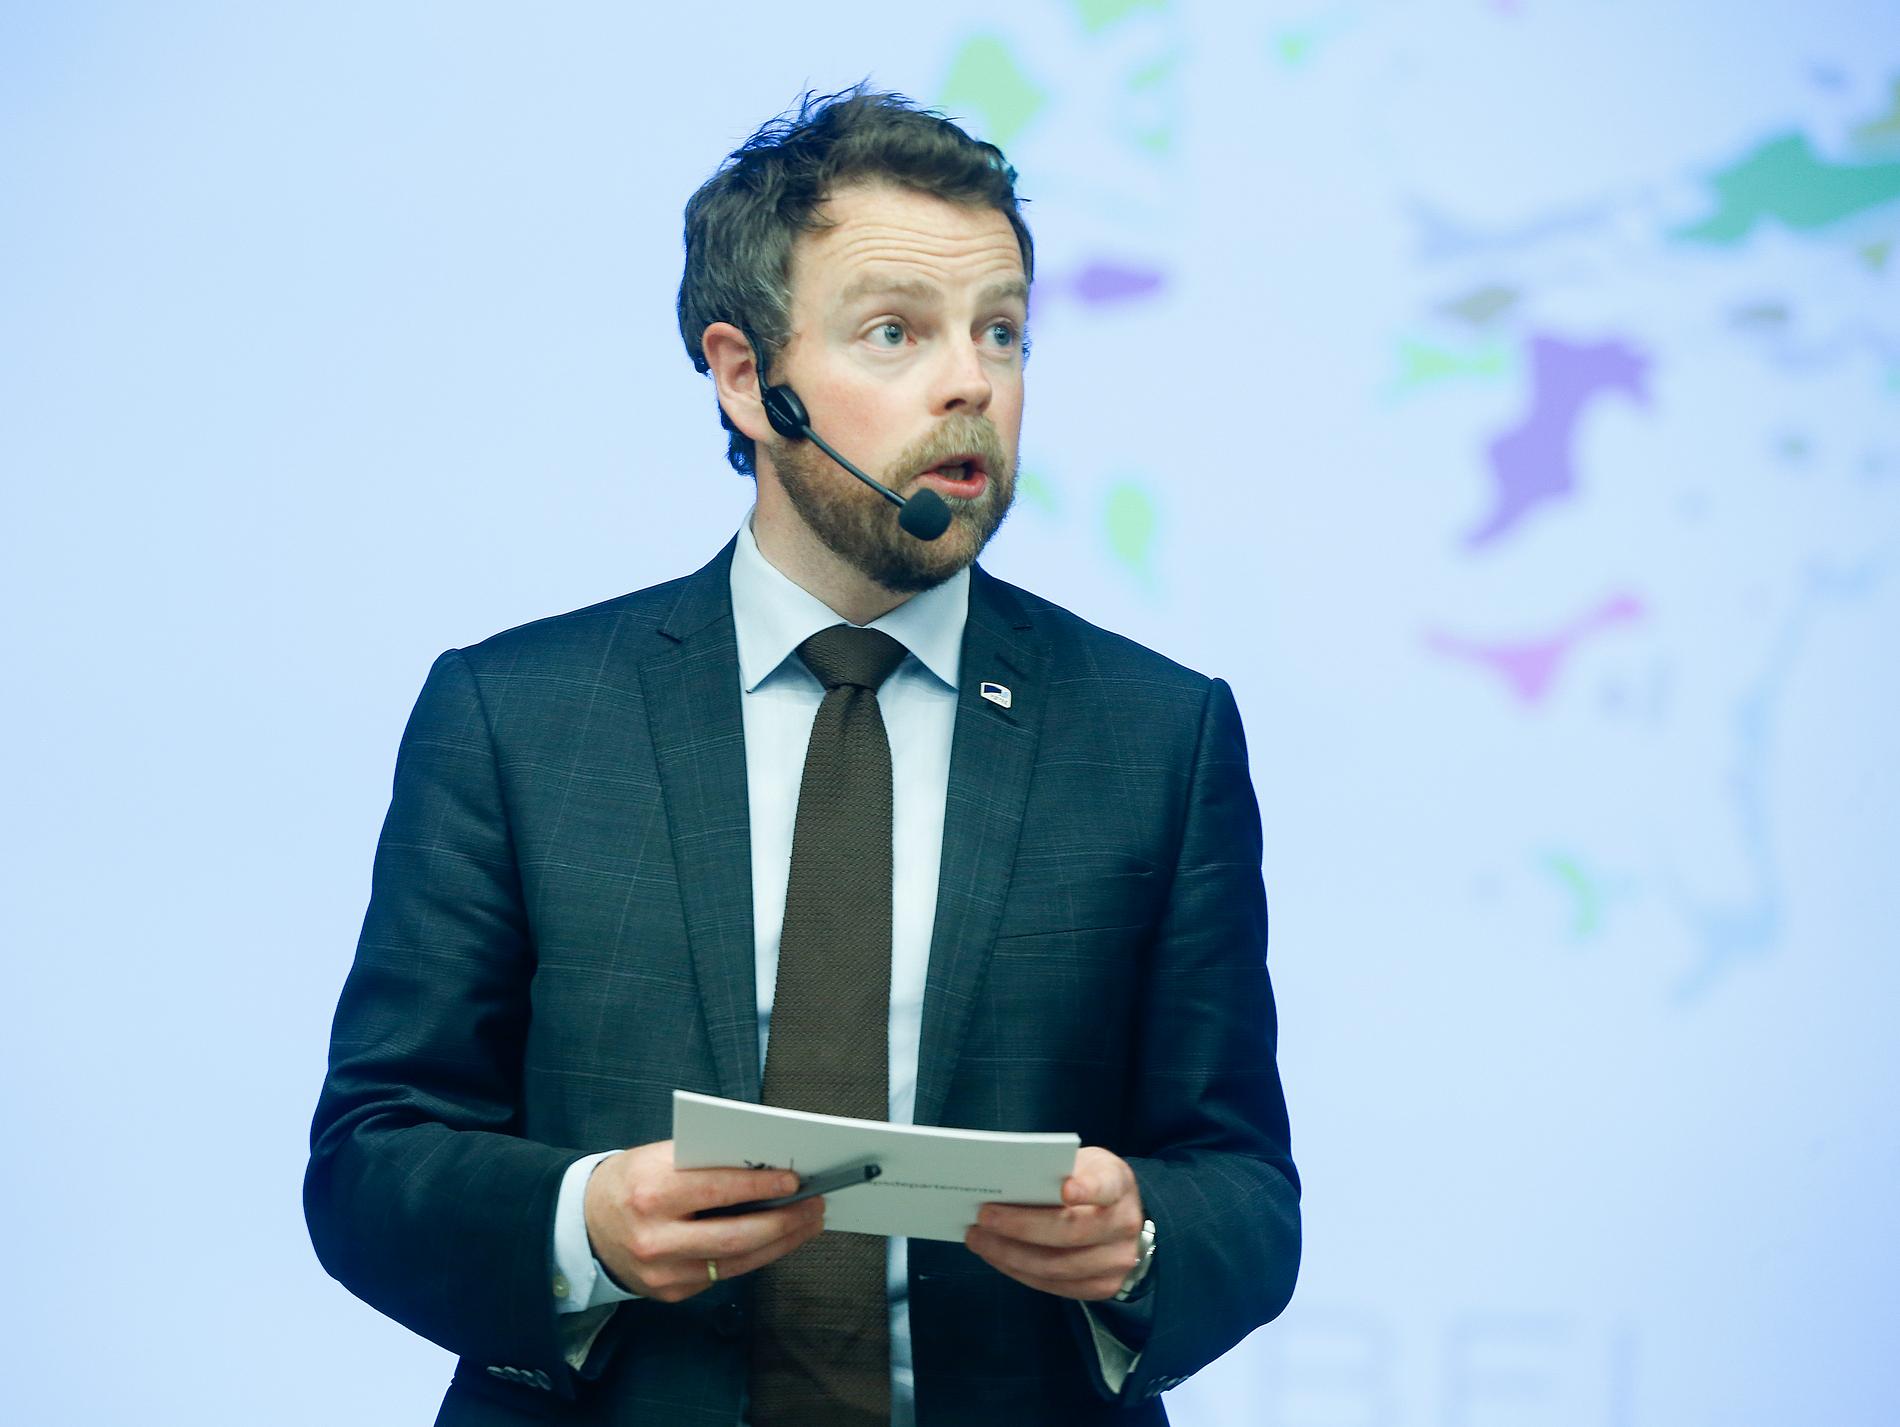 GIR SEG: Kunnskapsminister Torbjørn Røe Isaksen gir seg som stortingsrepresentant etter to perioder.